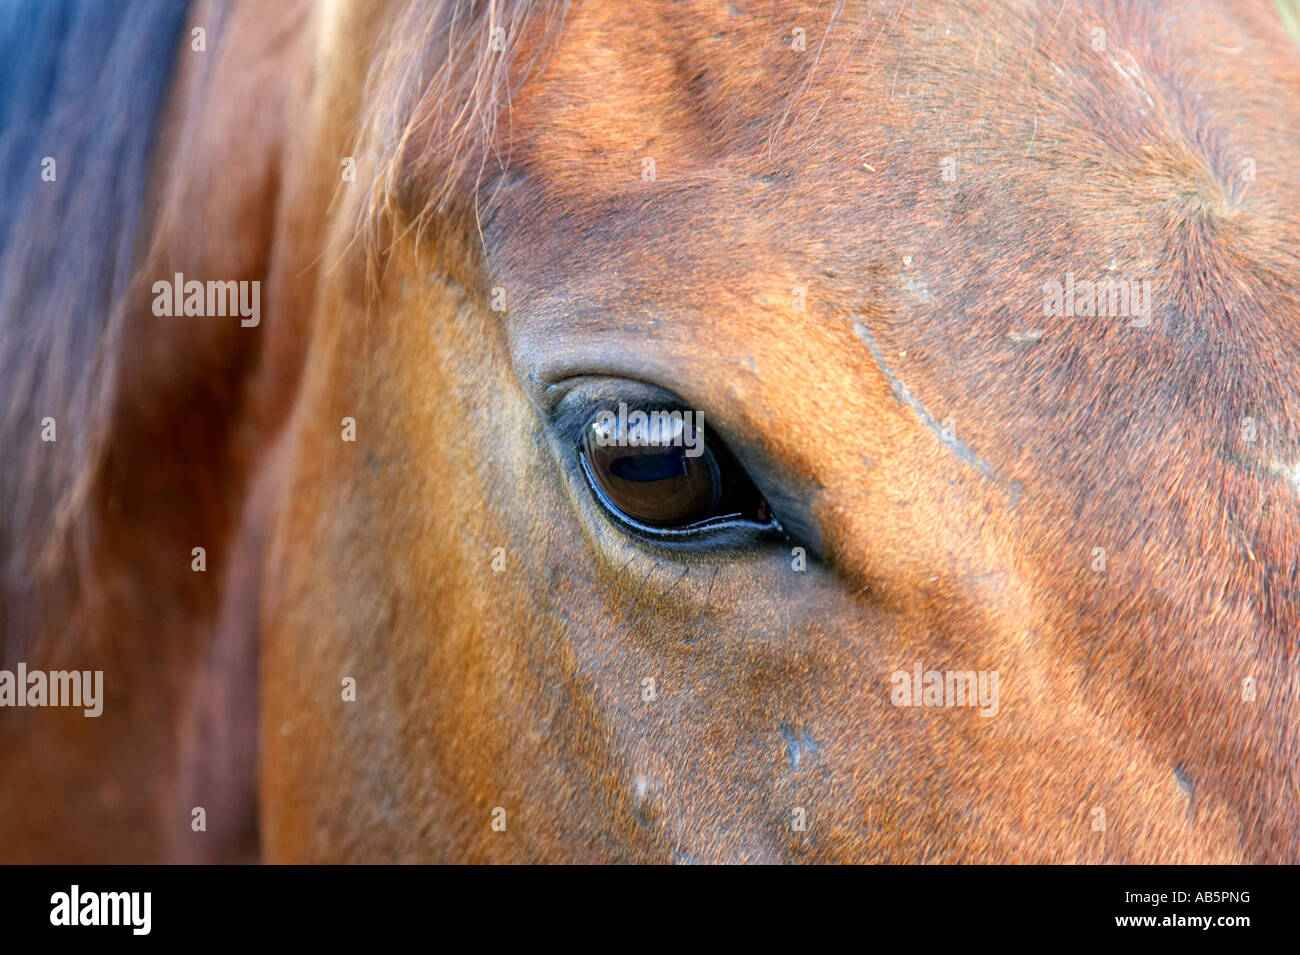 Chiudere un occhio di cavalli e la testa di castagno di colore marrone Foto Stock